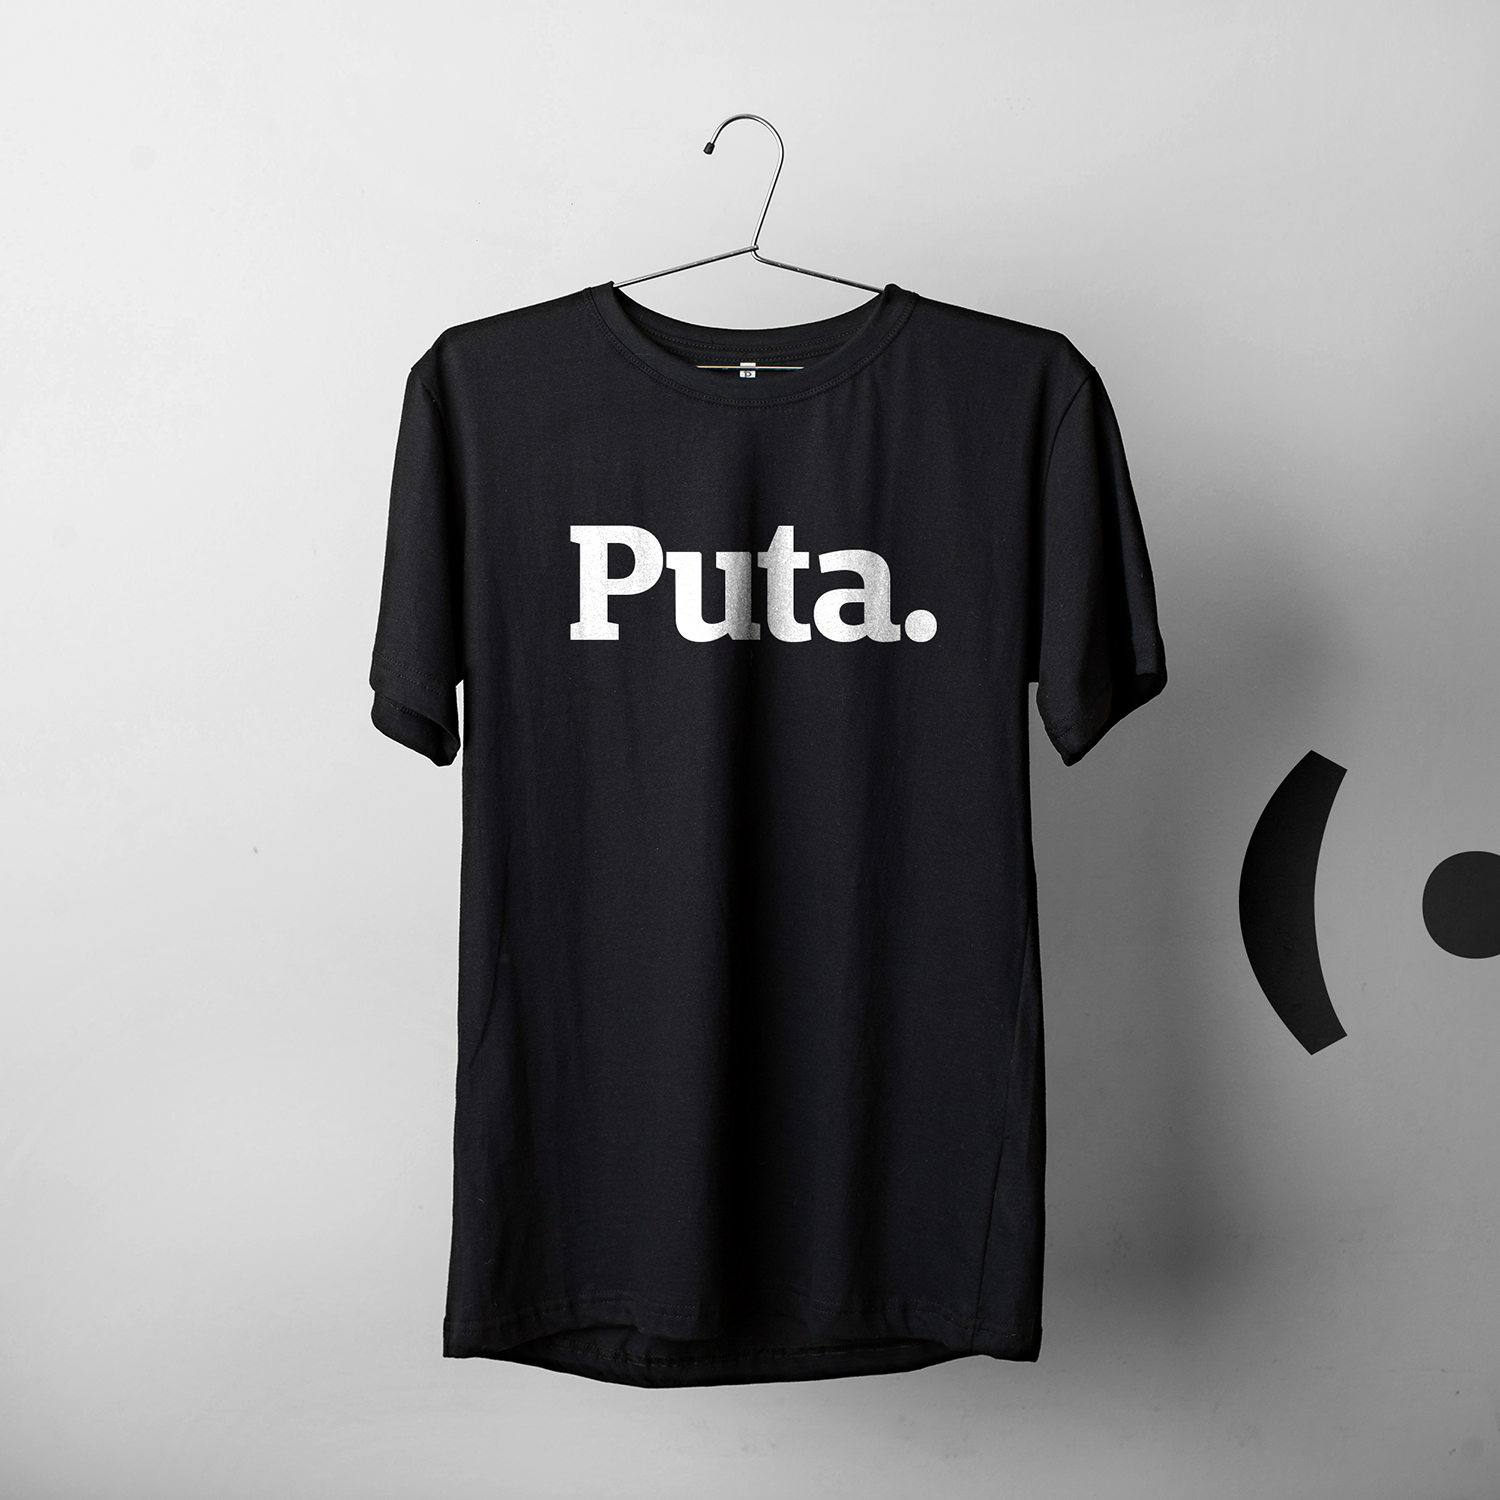 Foto colorida de uma camiseta preta escrito Puta em branco, fundo cinza com logo da Peita.